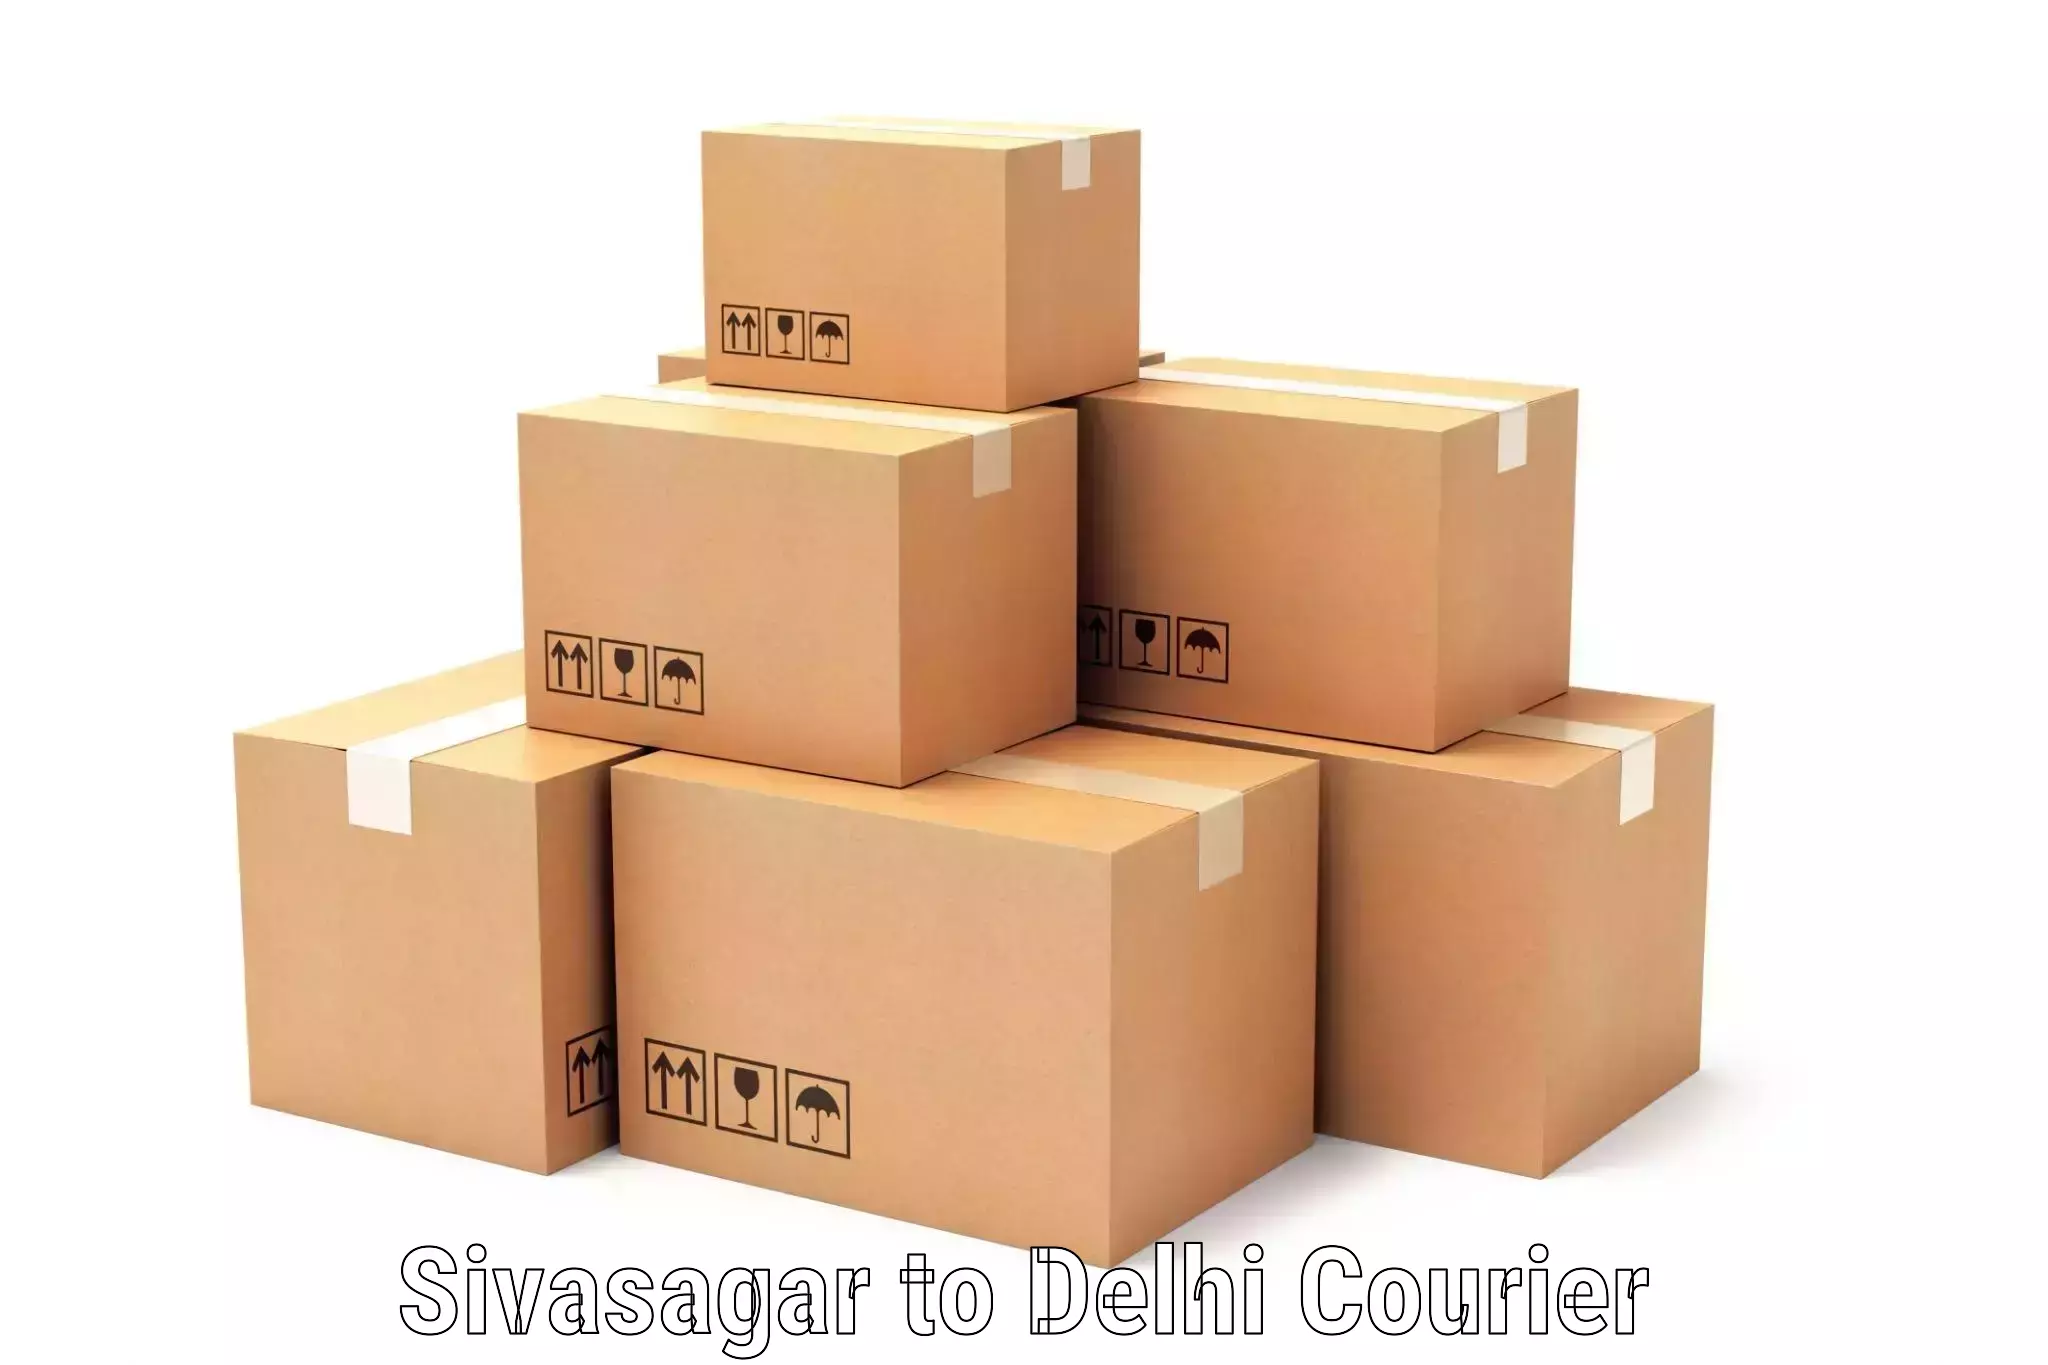 Postal and courier services Sivasagar to Jamia Millia Islamia New Delhi